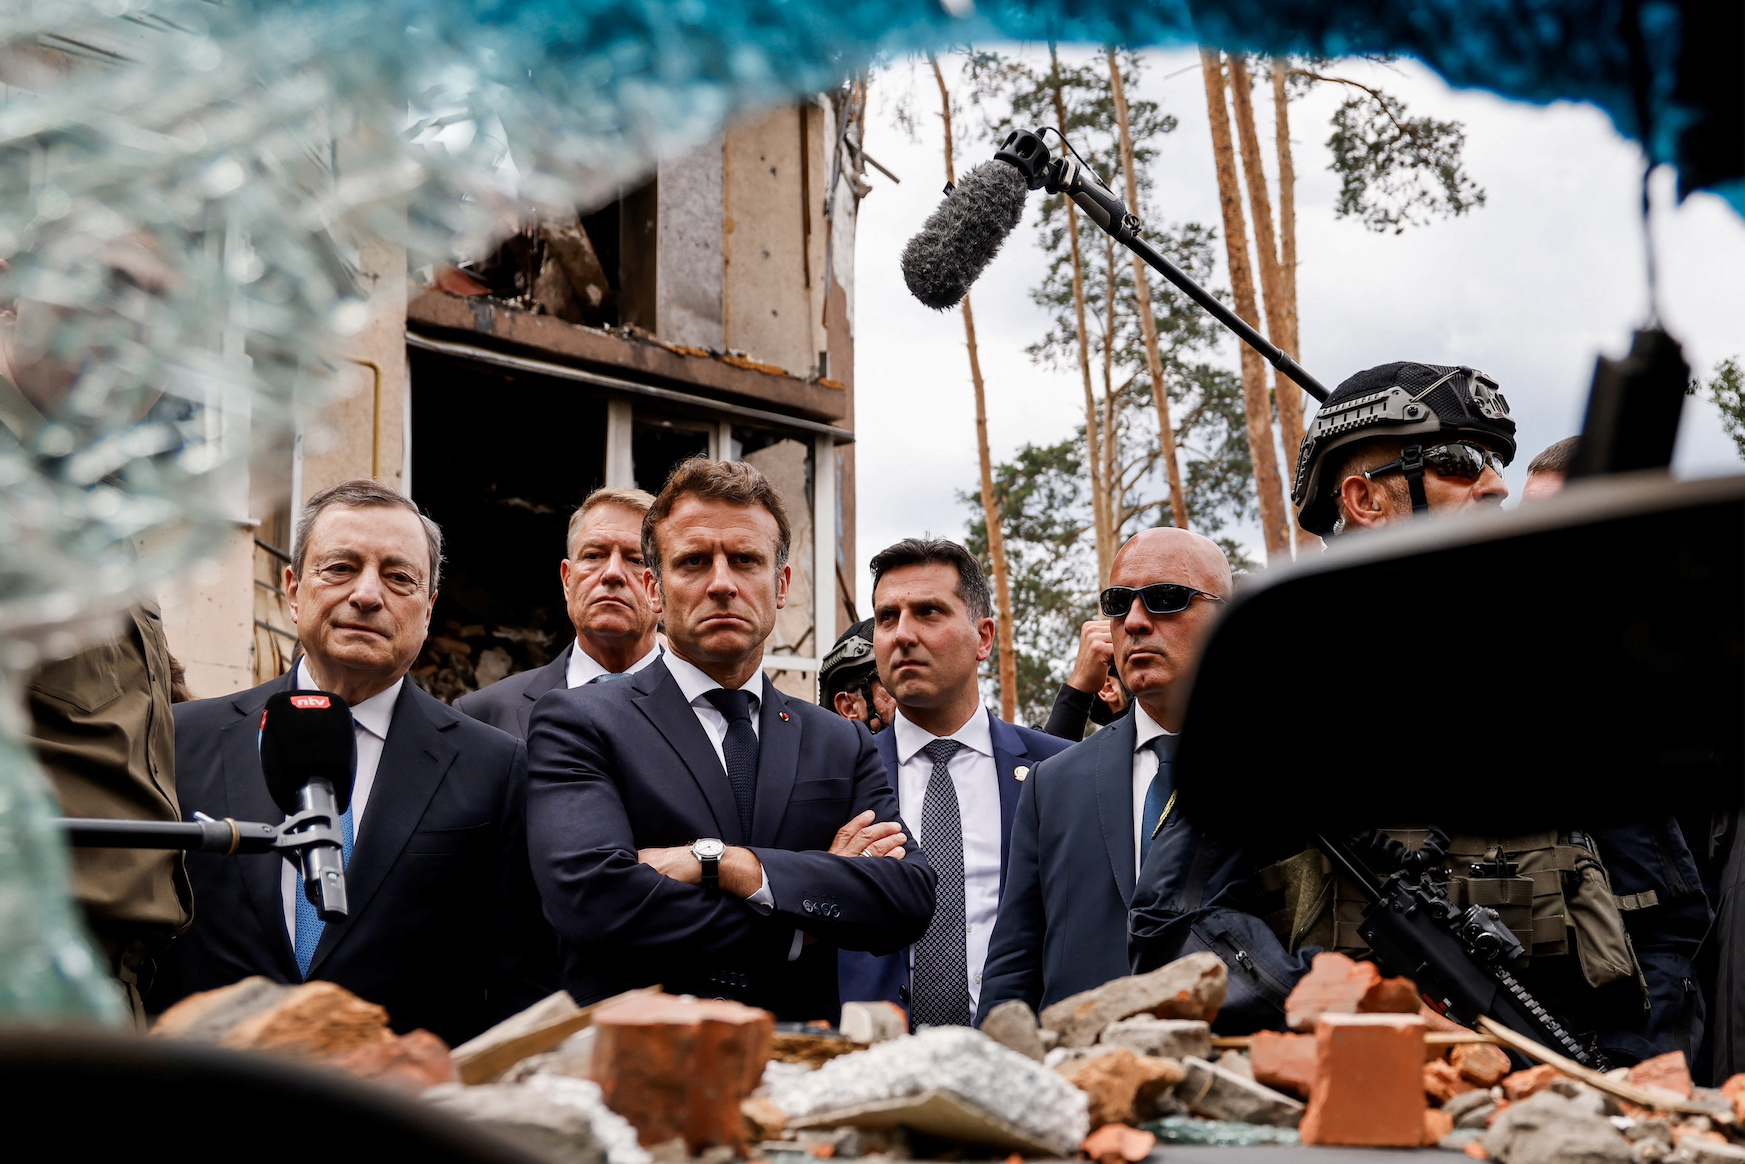 Держава і Політика: Найголовніші тези і цитати з прес-конференції президента Франції Макрона